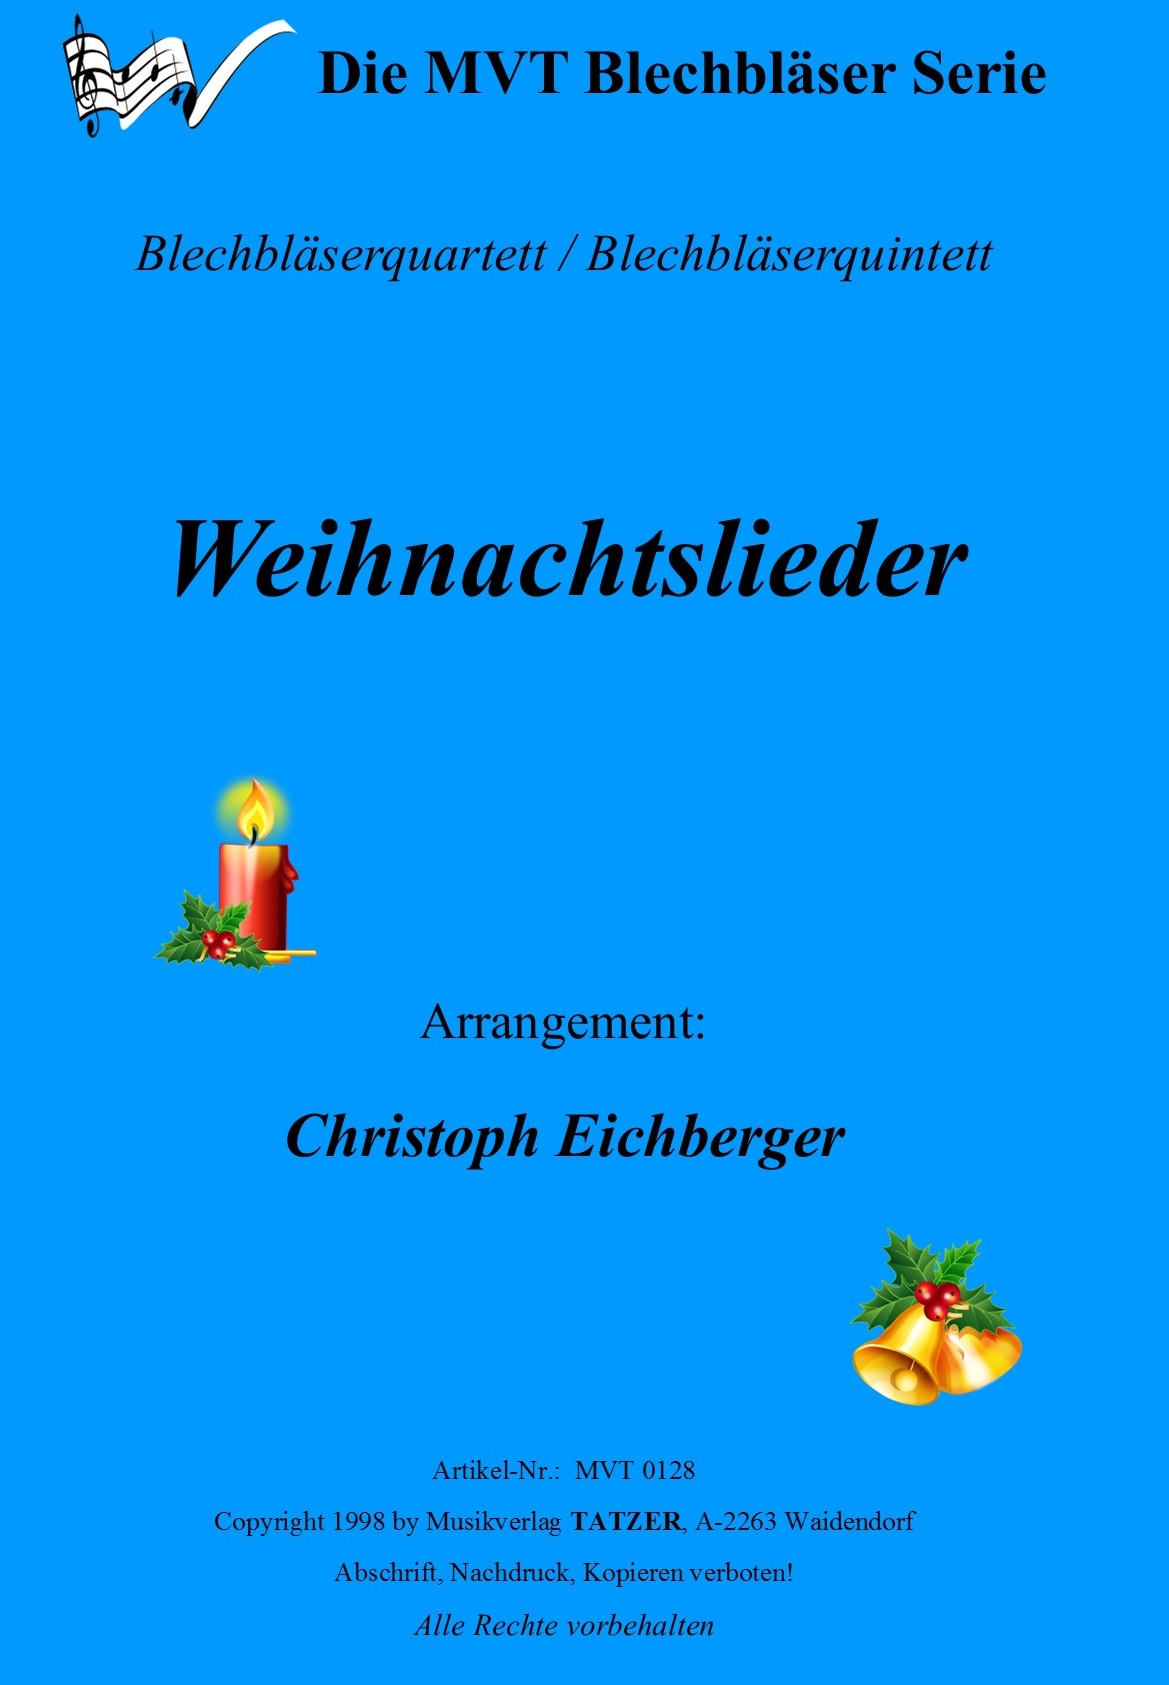 Weihnachtslieder (A), Christoph Eichberger